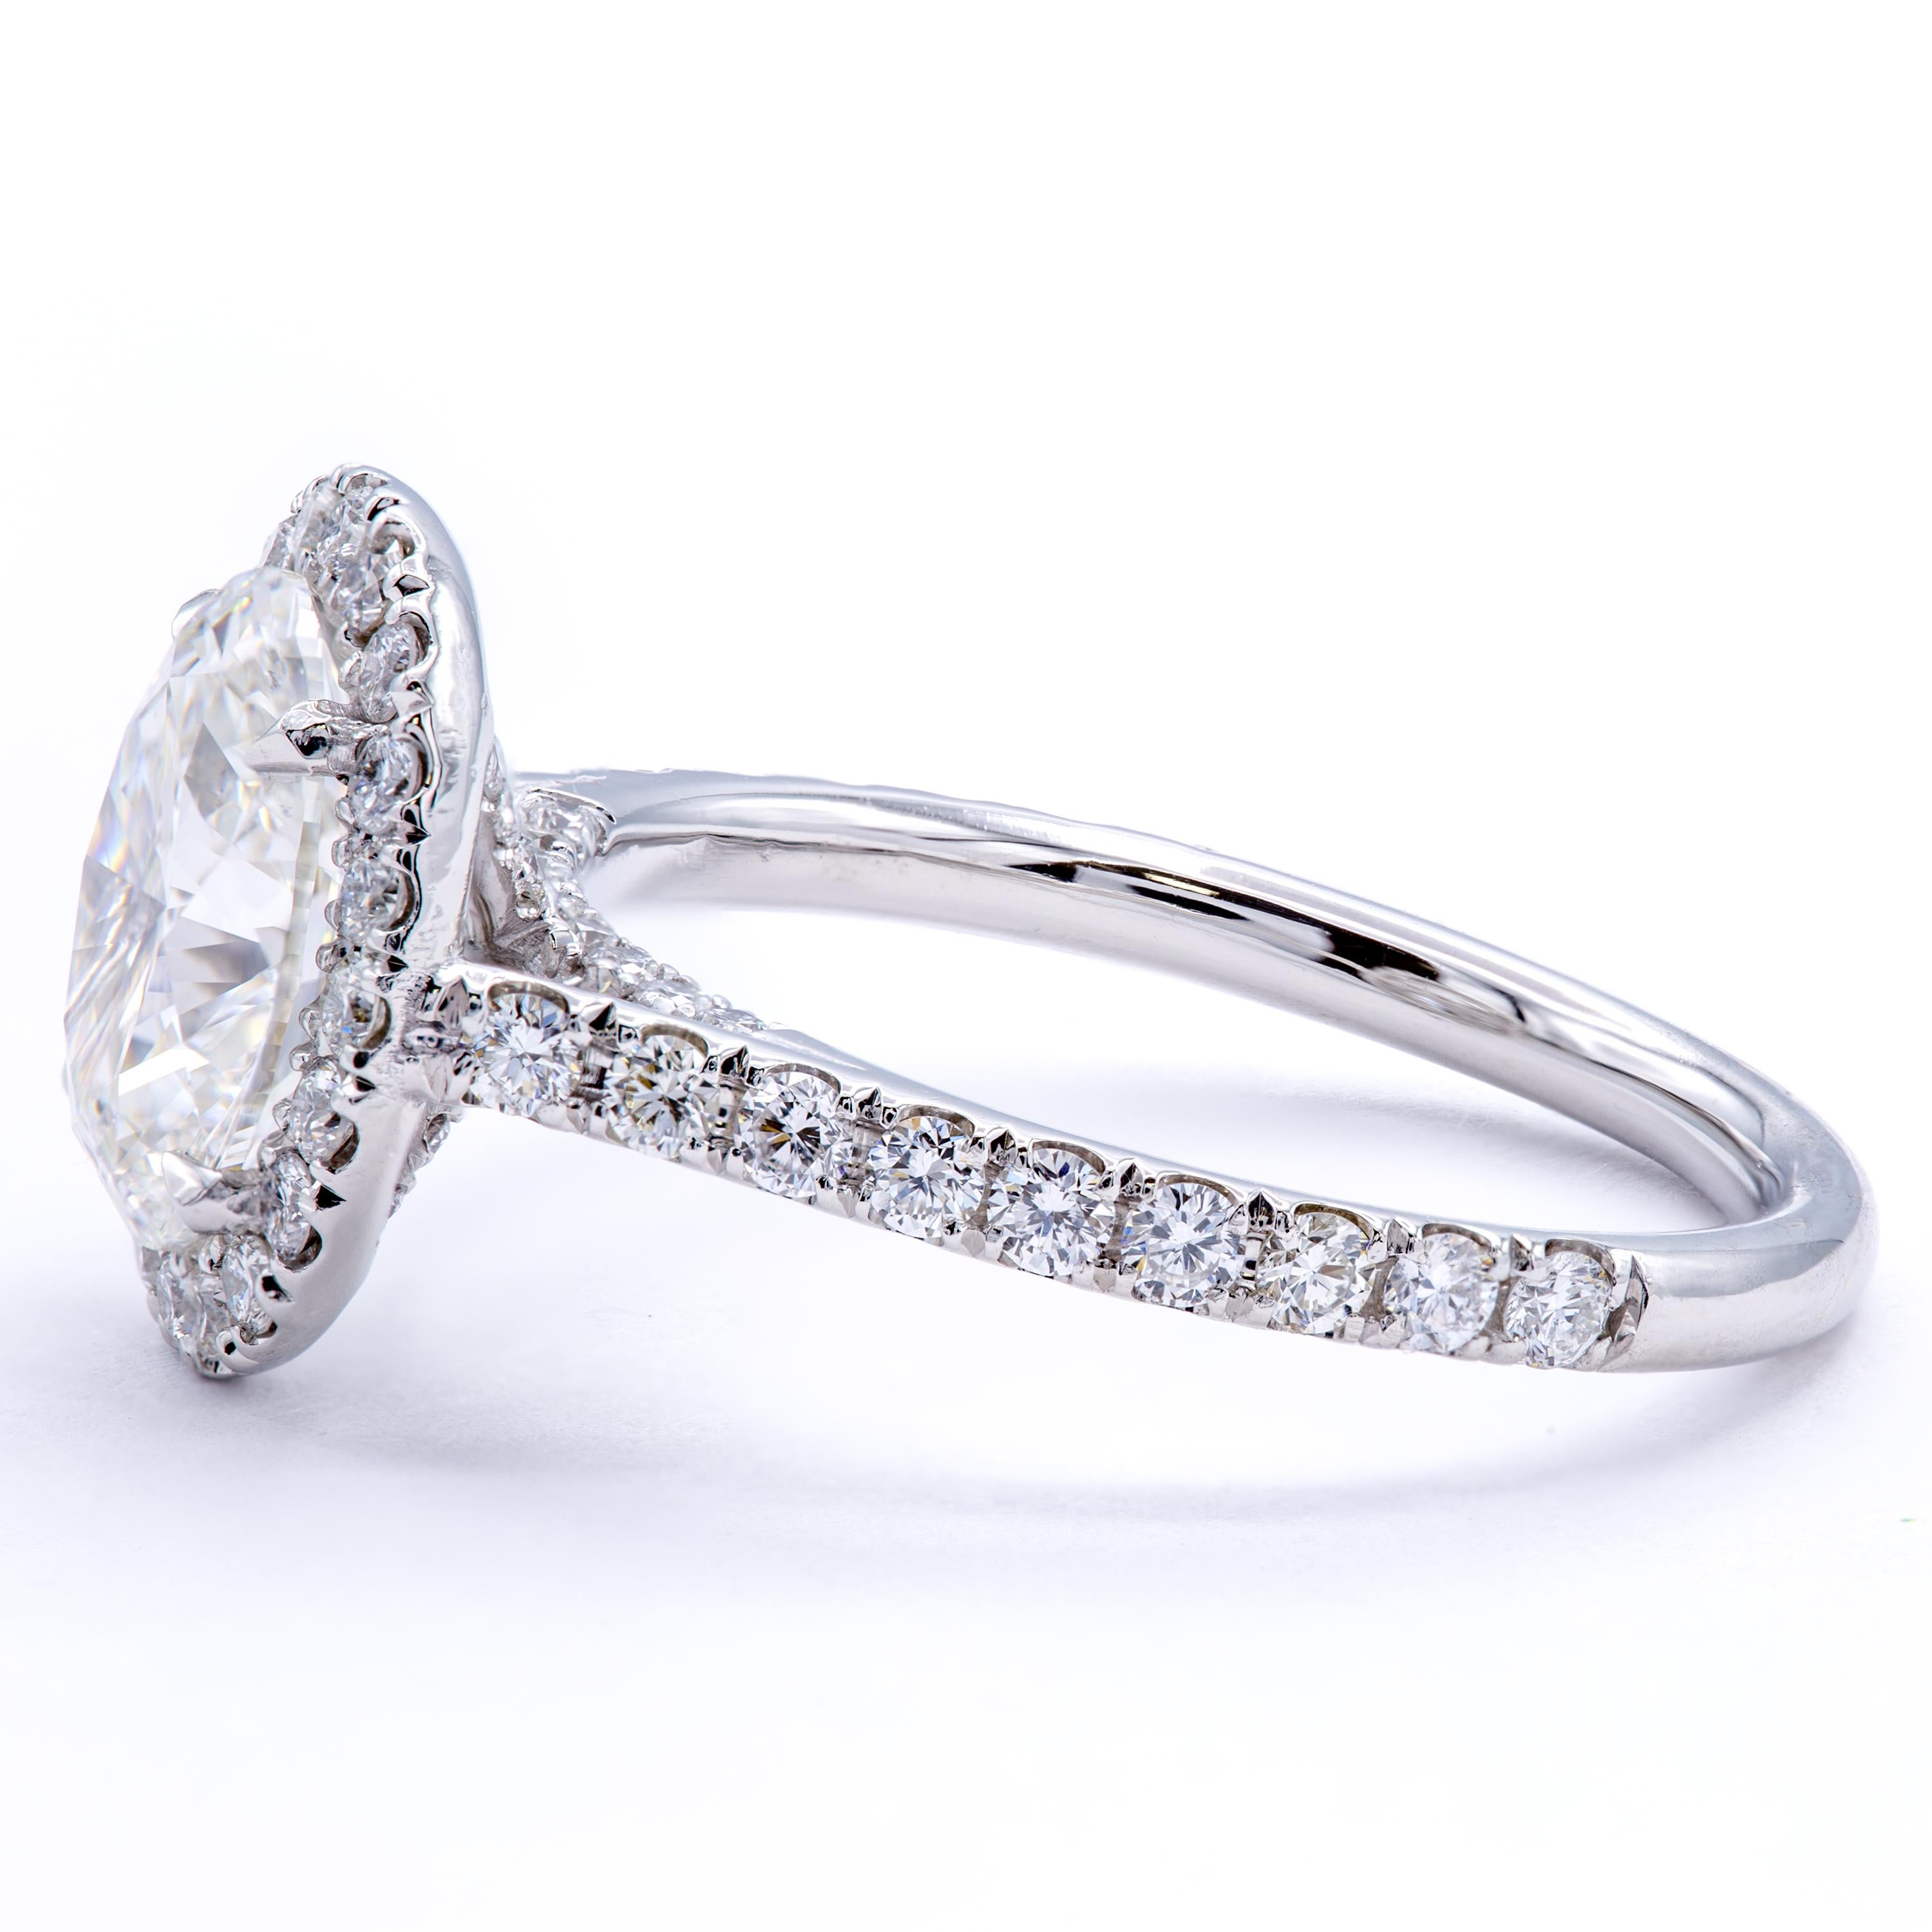 1.8 carat oval diamond ring